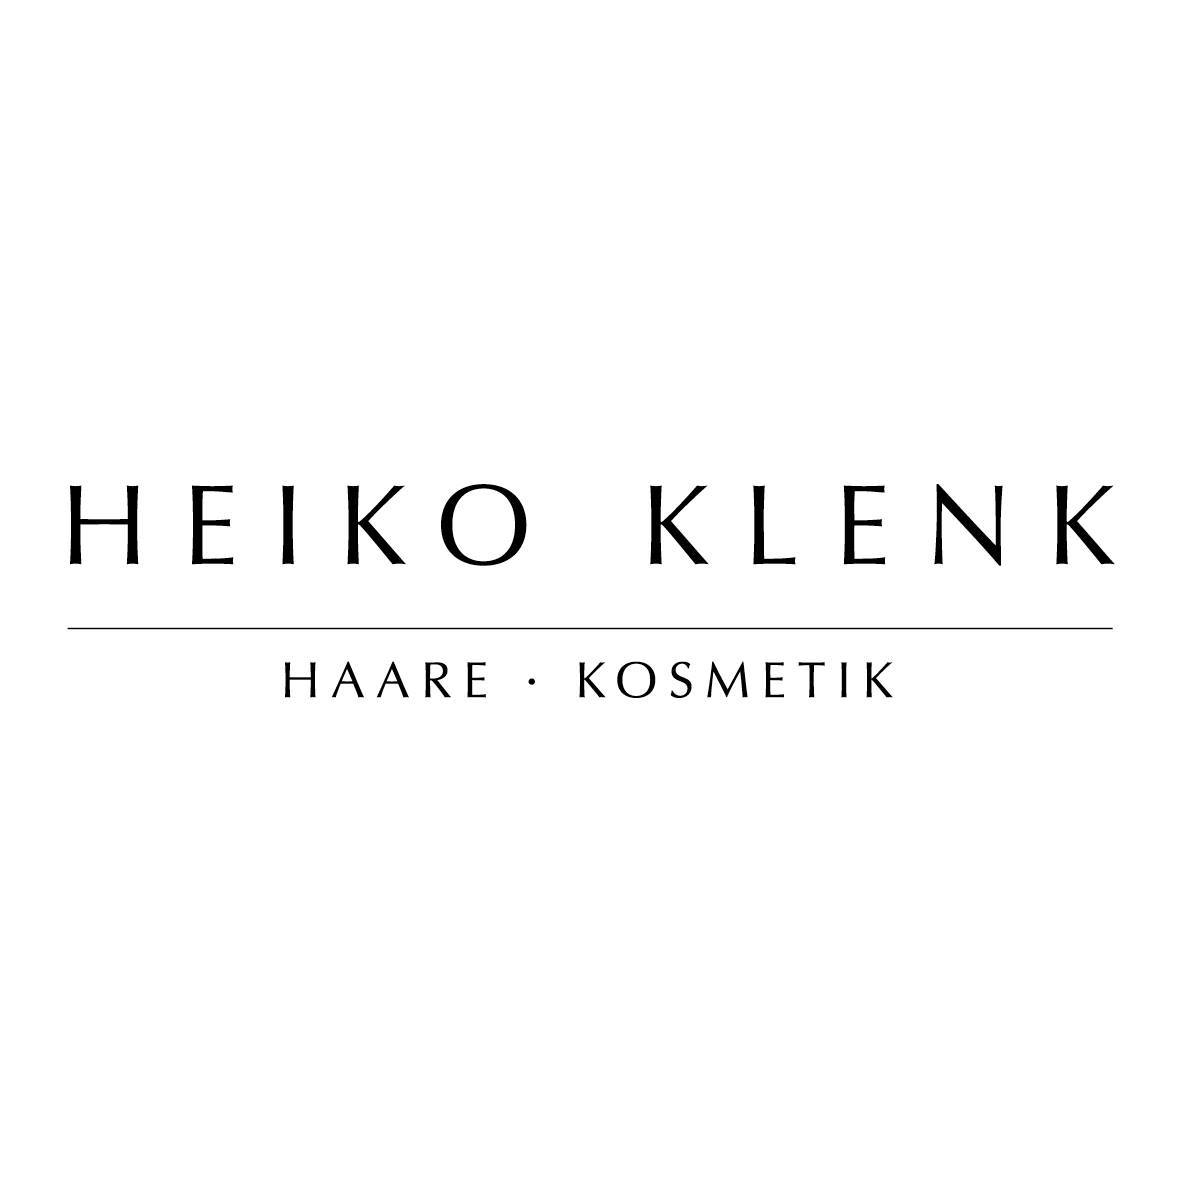 Logo HEIKO KLENK Haare | Kosmetik | Friseur in Neckarsulm & Umgebung